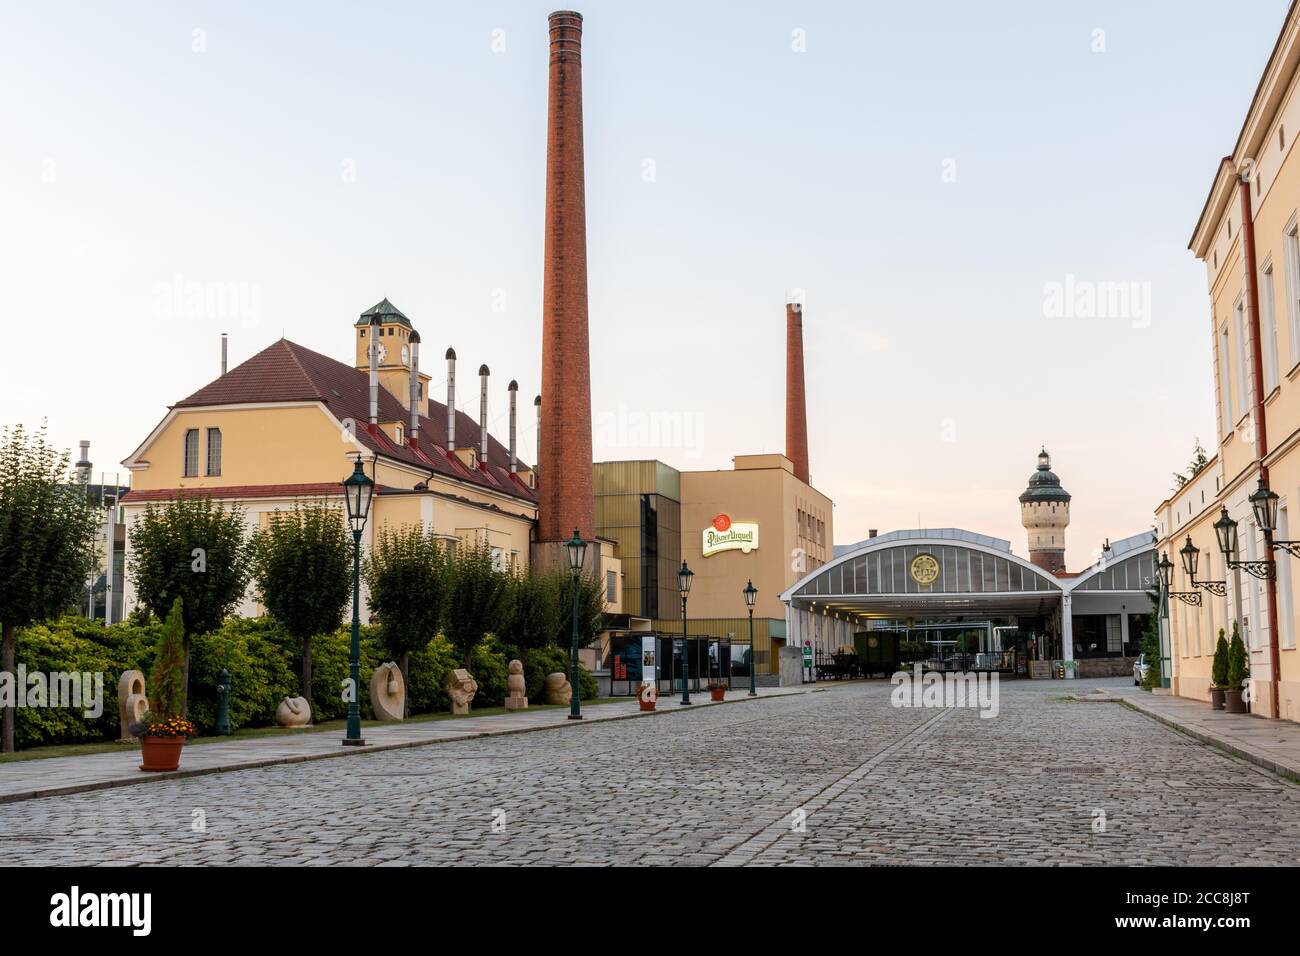 Pilsen, Tschechische Republik - 8. August 2020: Blick auf die historischen Gebäude der Pilsner Urquell Brauerei. Das Firmenlogo ist deutlich sichtbar. Stockfoto